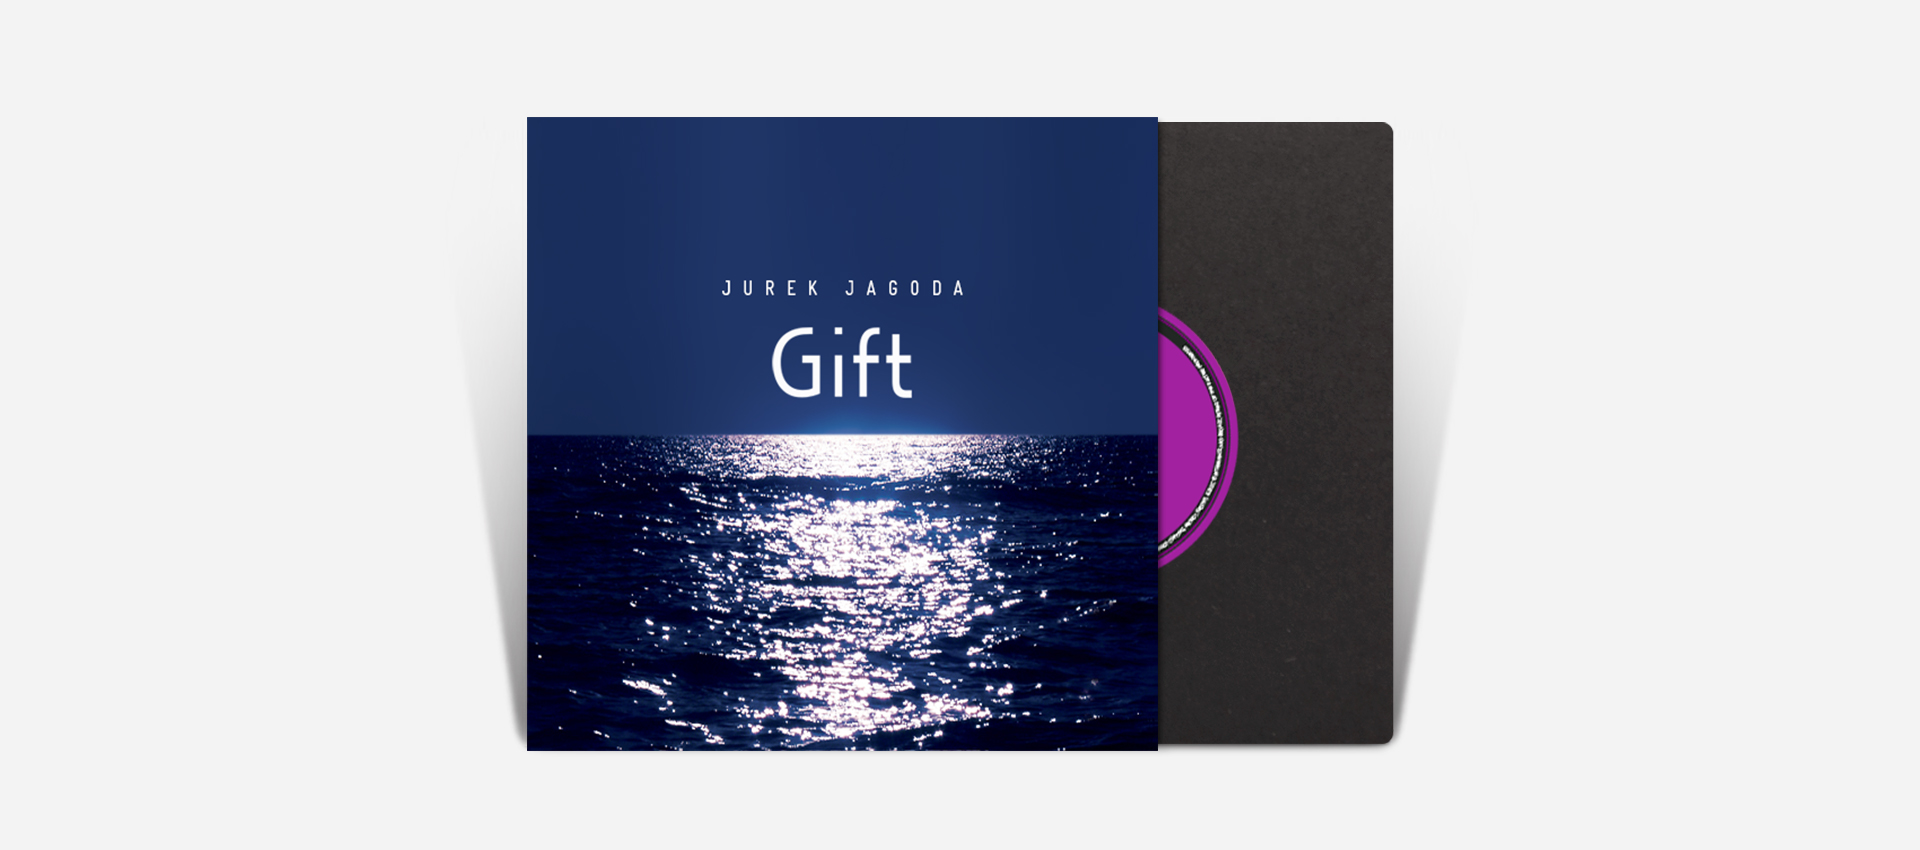 Gift, album cover design